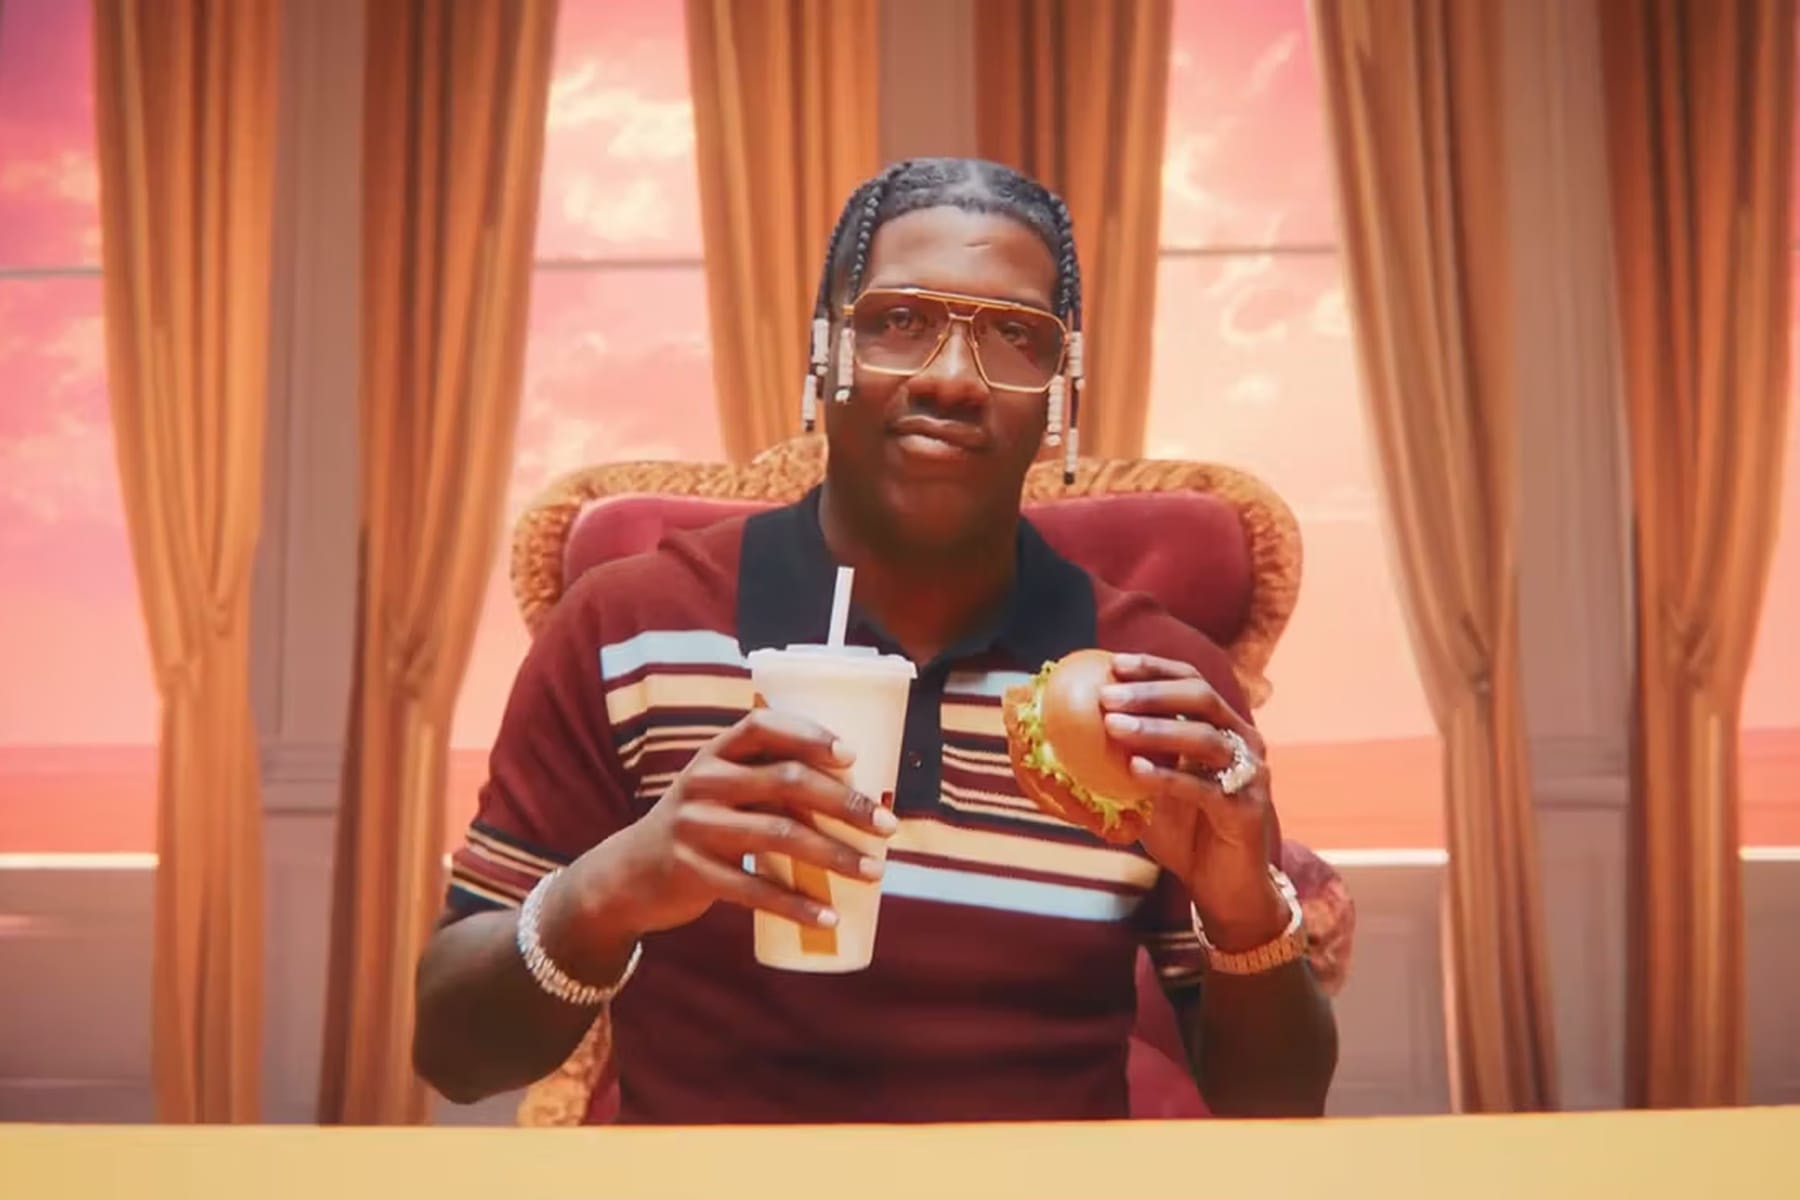 加拿大 McDonald's 携手 Lil Yachty 推出全新歌曲《Menu Song Remix》